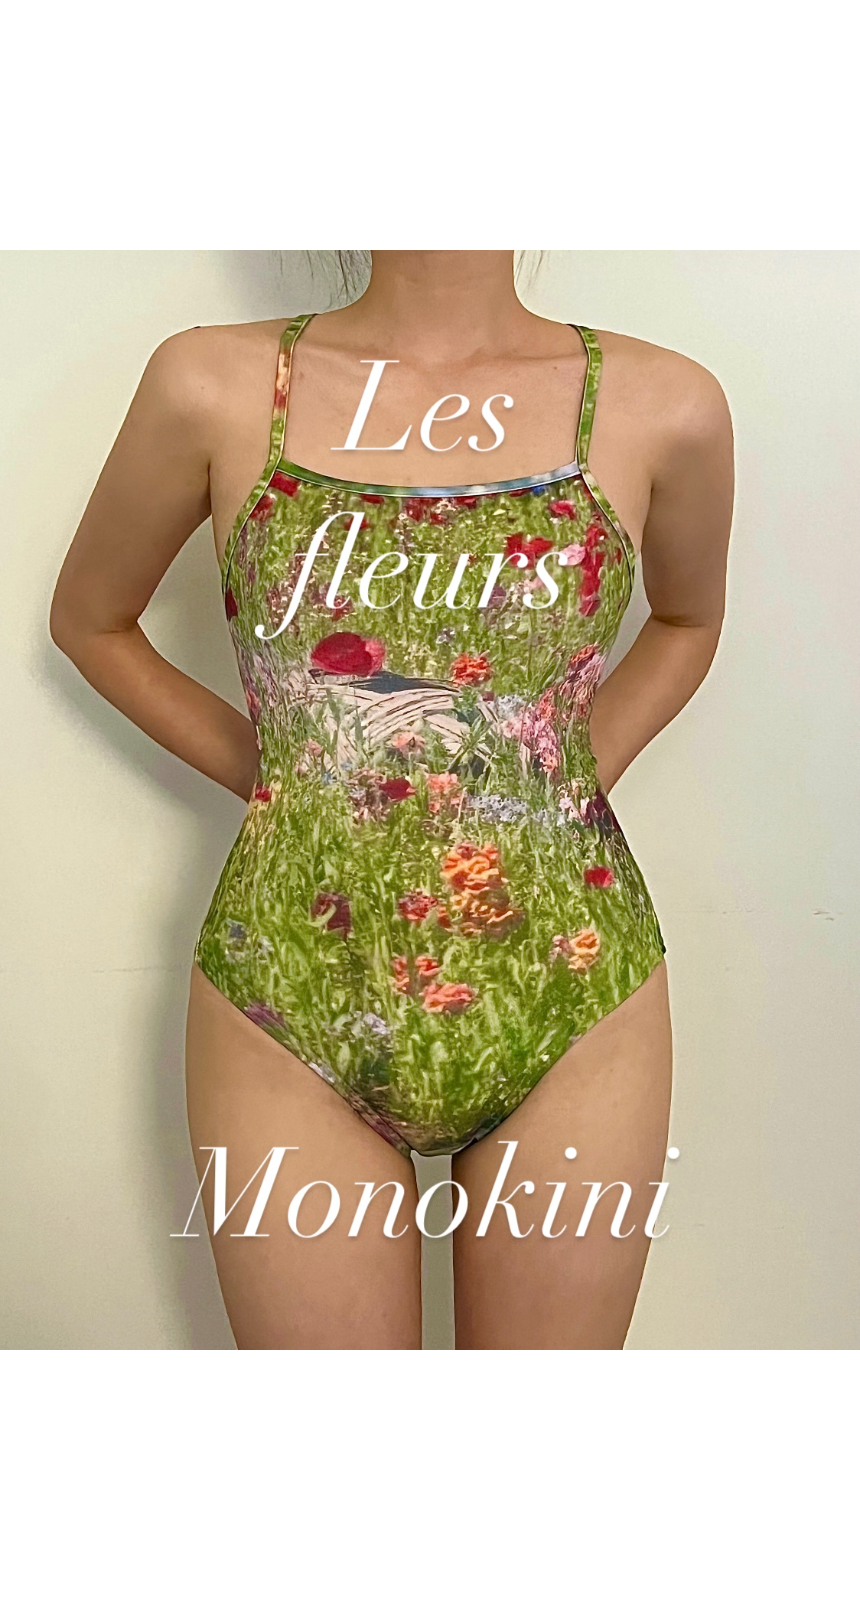 (마지막 입고)Les fleurs Monokini